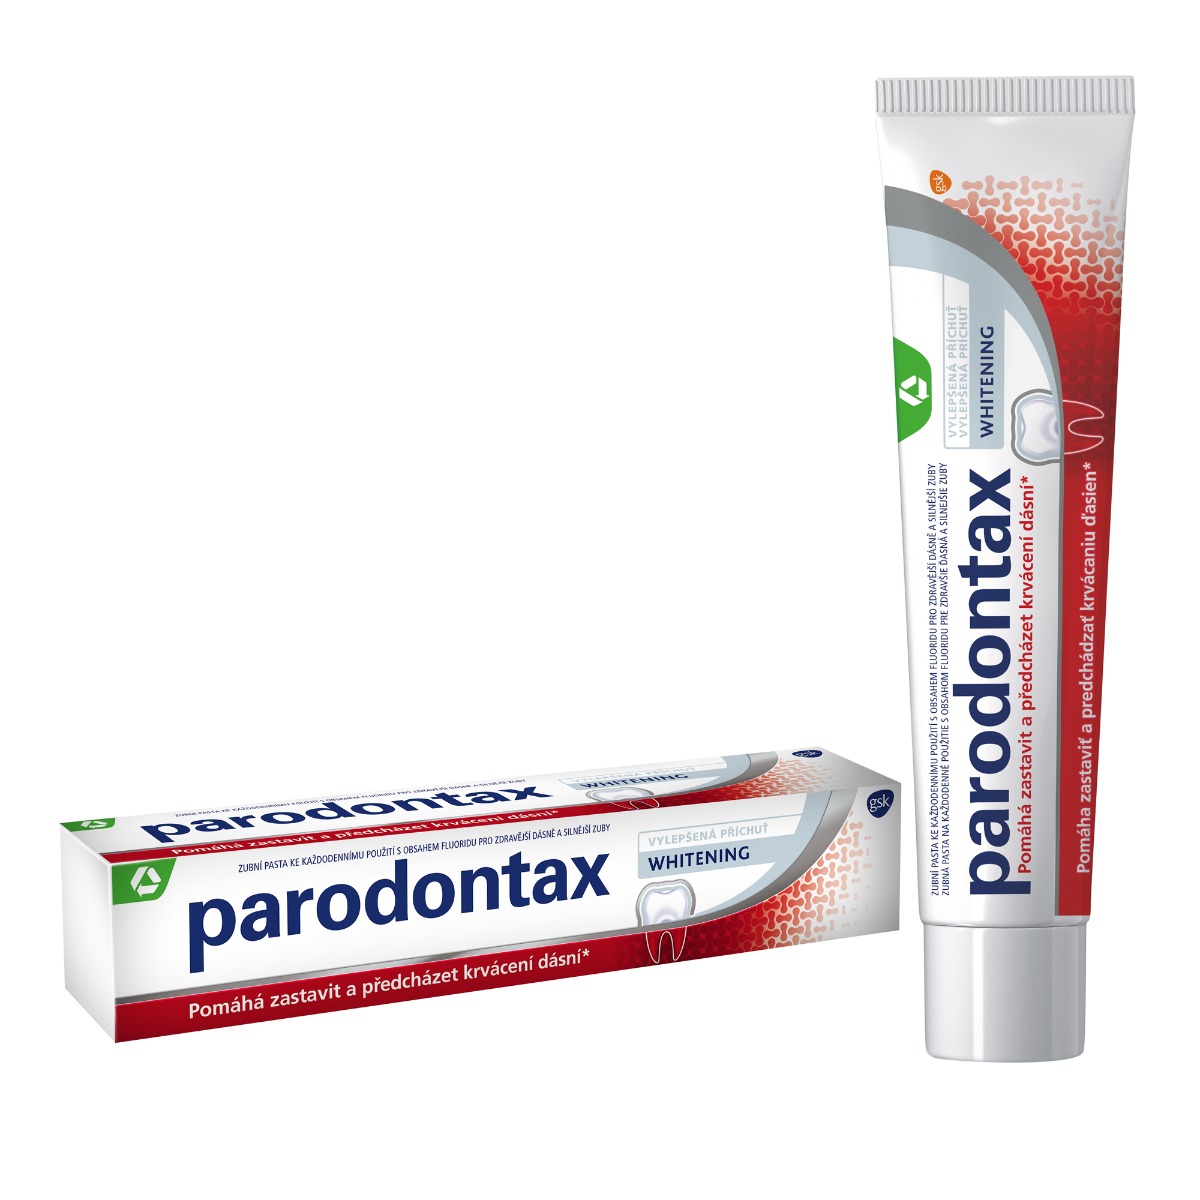 Parodontax Whitening zubní pasta 75 ml Parodontax